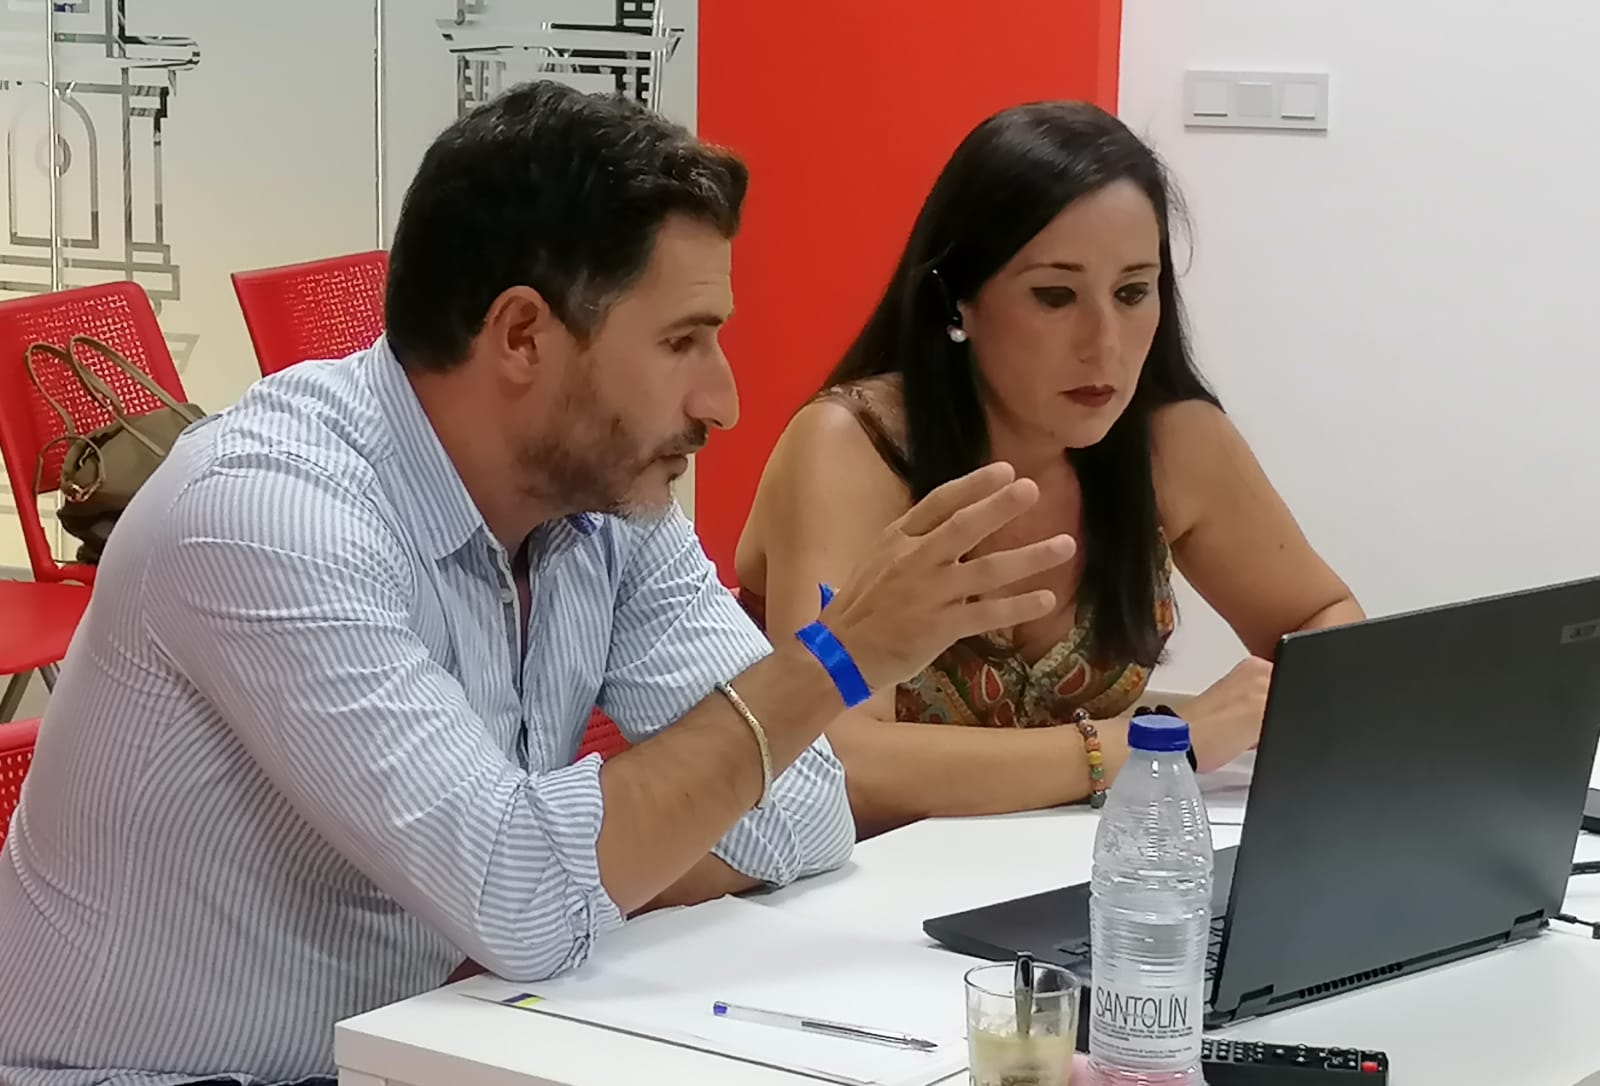 Los socialistas algecireños Rocío Arrabal y Fran Fernández durante su reunión online con el Ministerio de Inclusión, Seguridad Social y Migraciones. PSOE